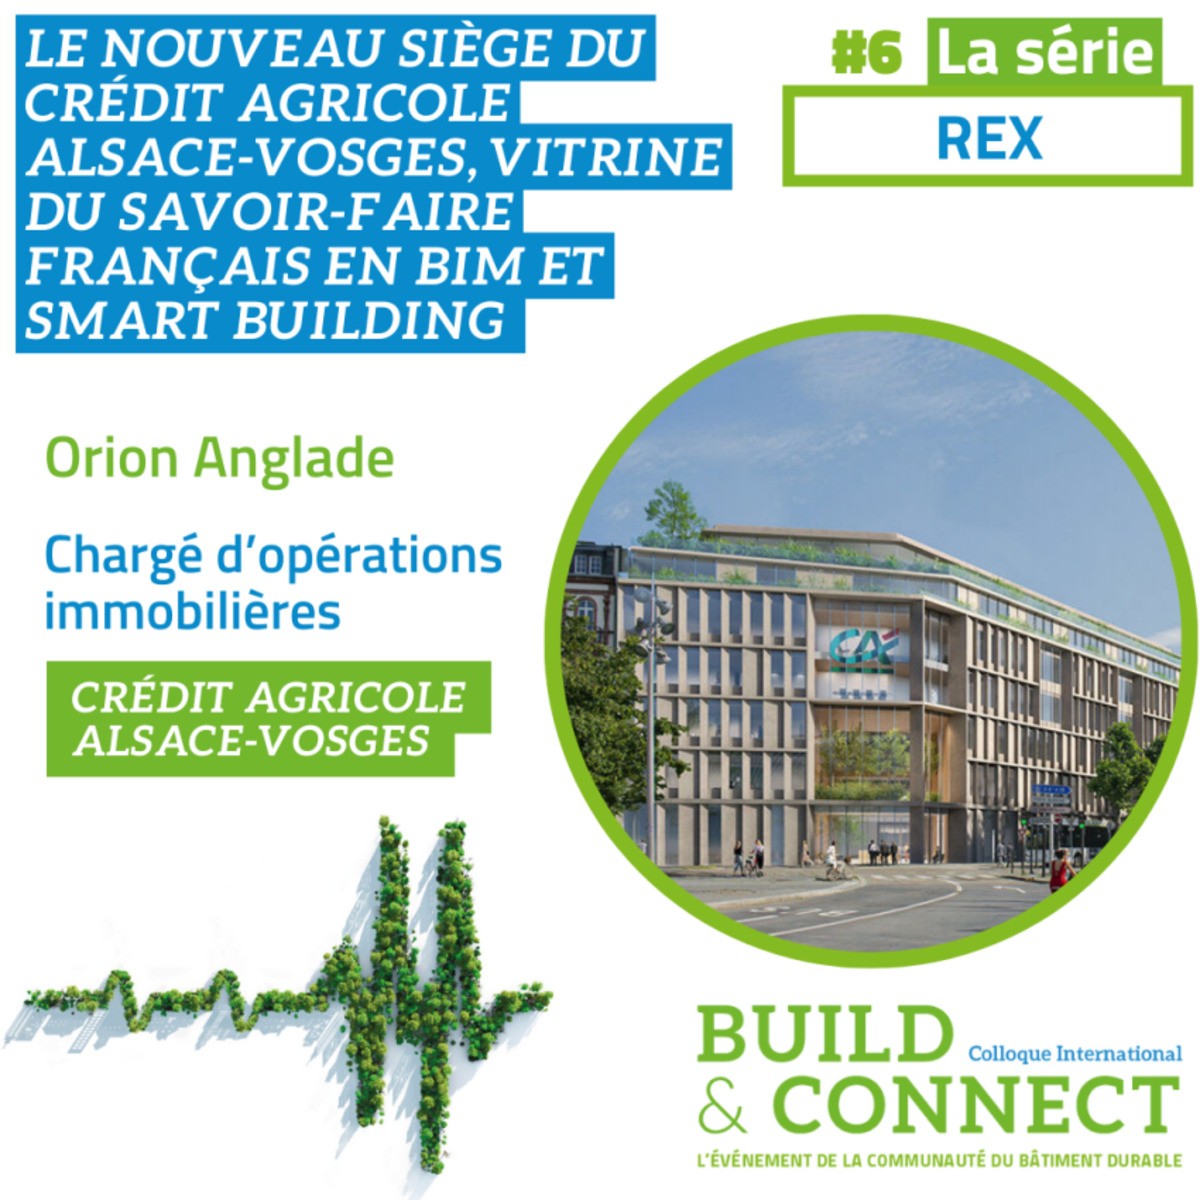 Le nouveau siège du Crédit Agricole Alsace-Vosges, vitrine du savoir-faire français en BIM et Smart Building